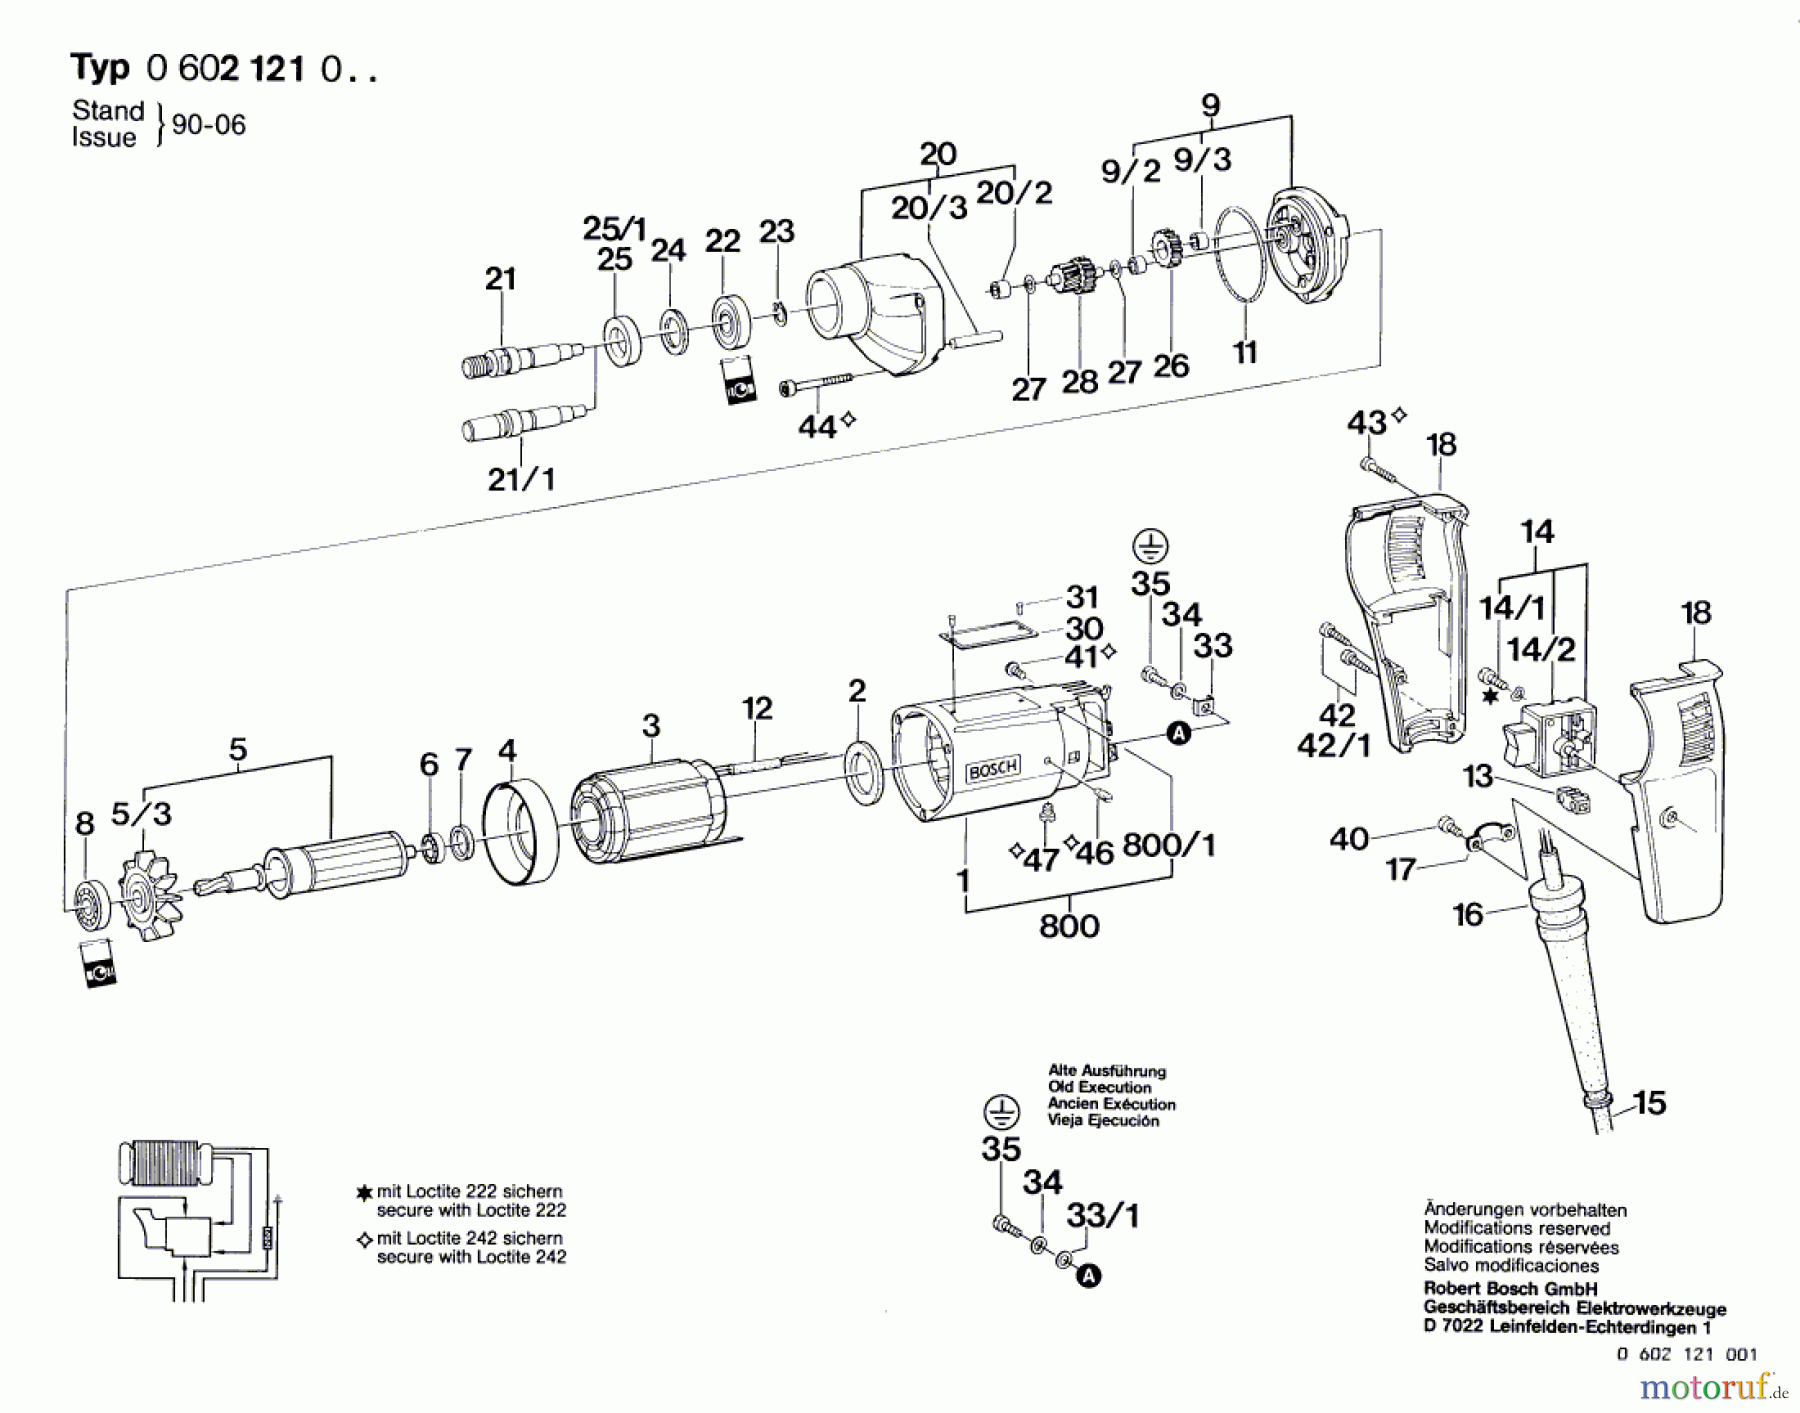  Bosch Werkzeug Bohrmaschine GR.55 Seite 1